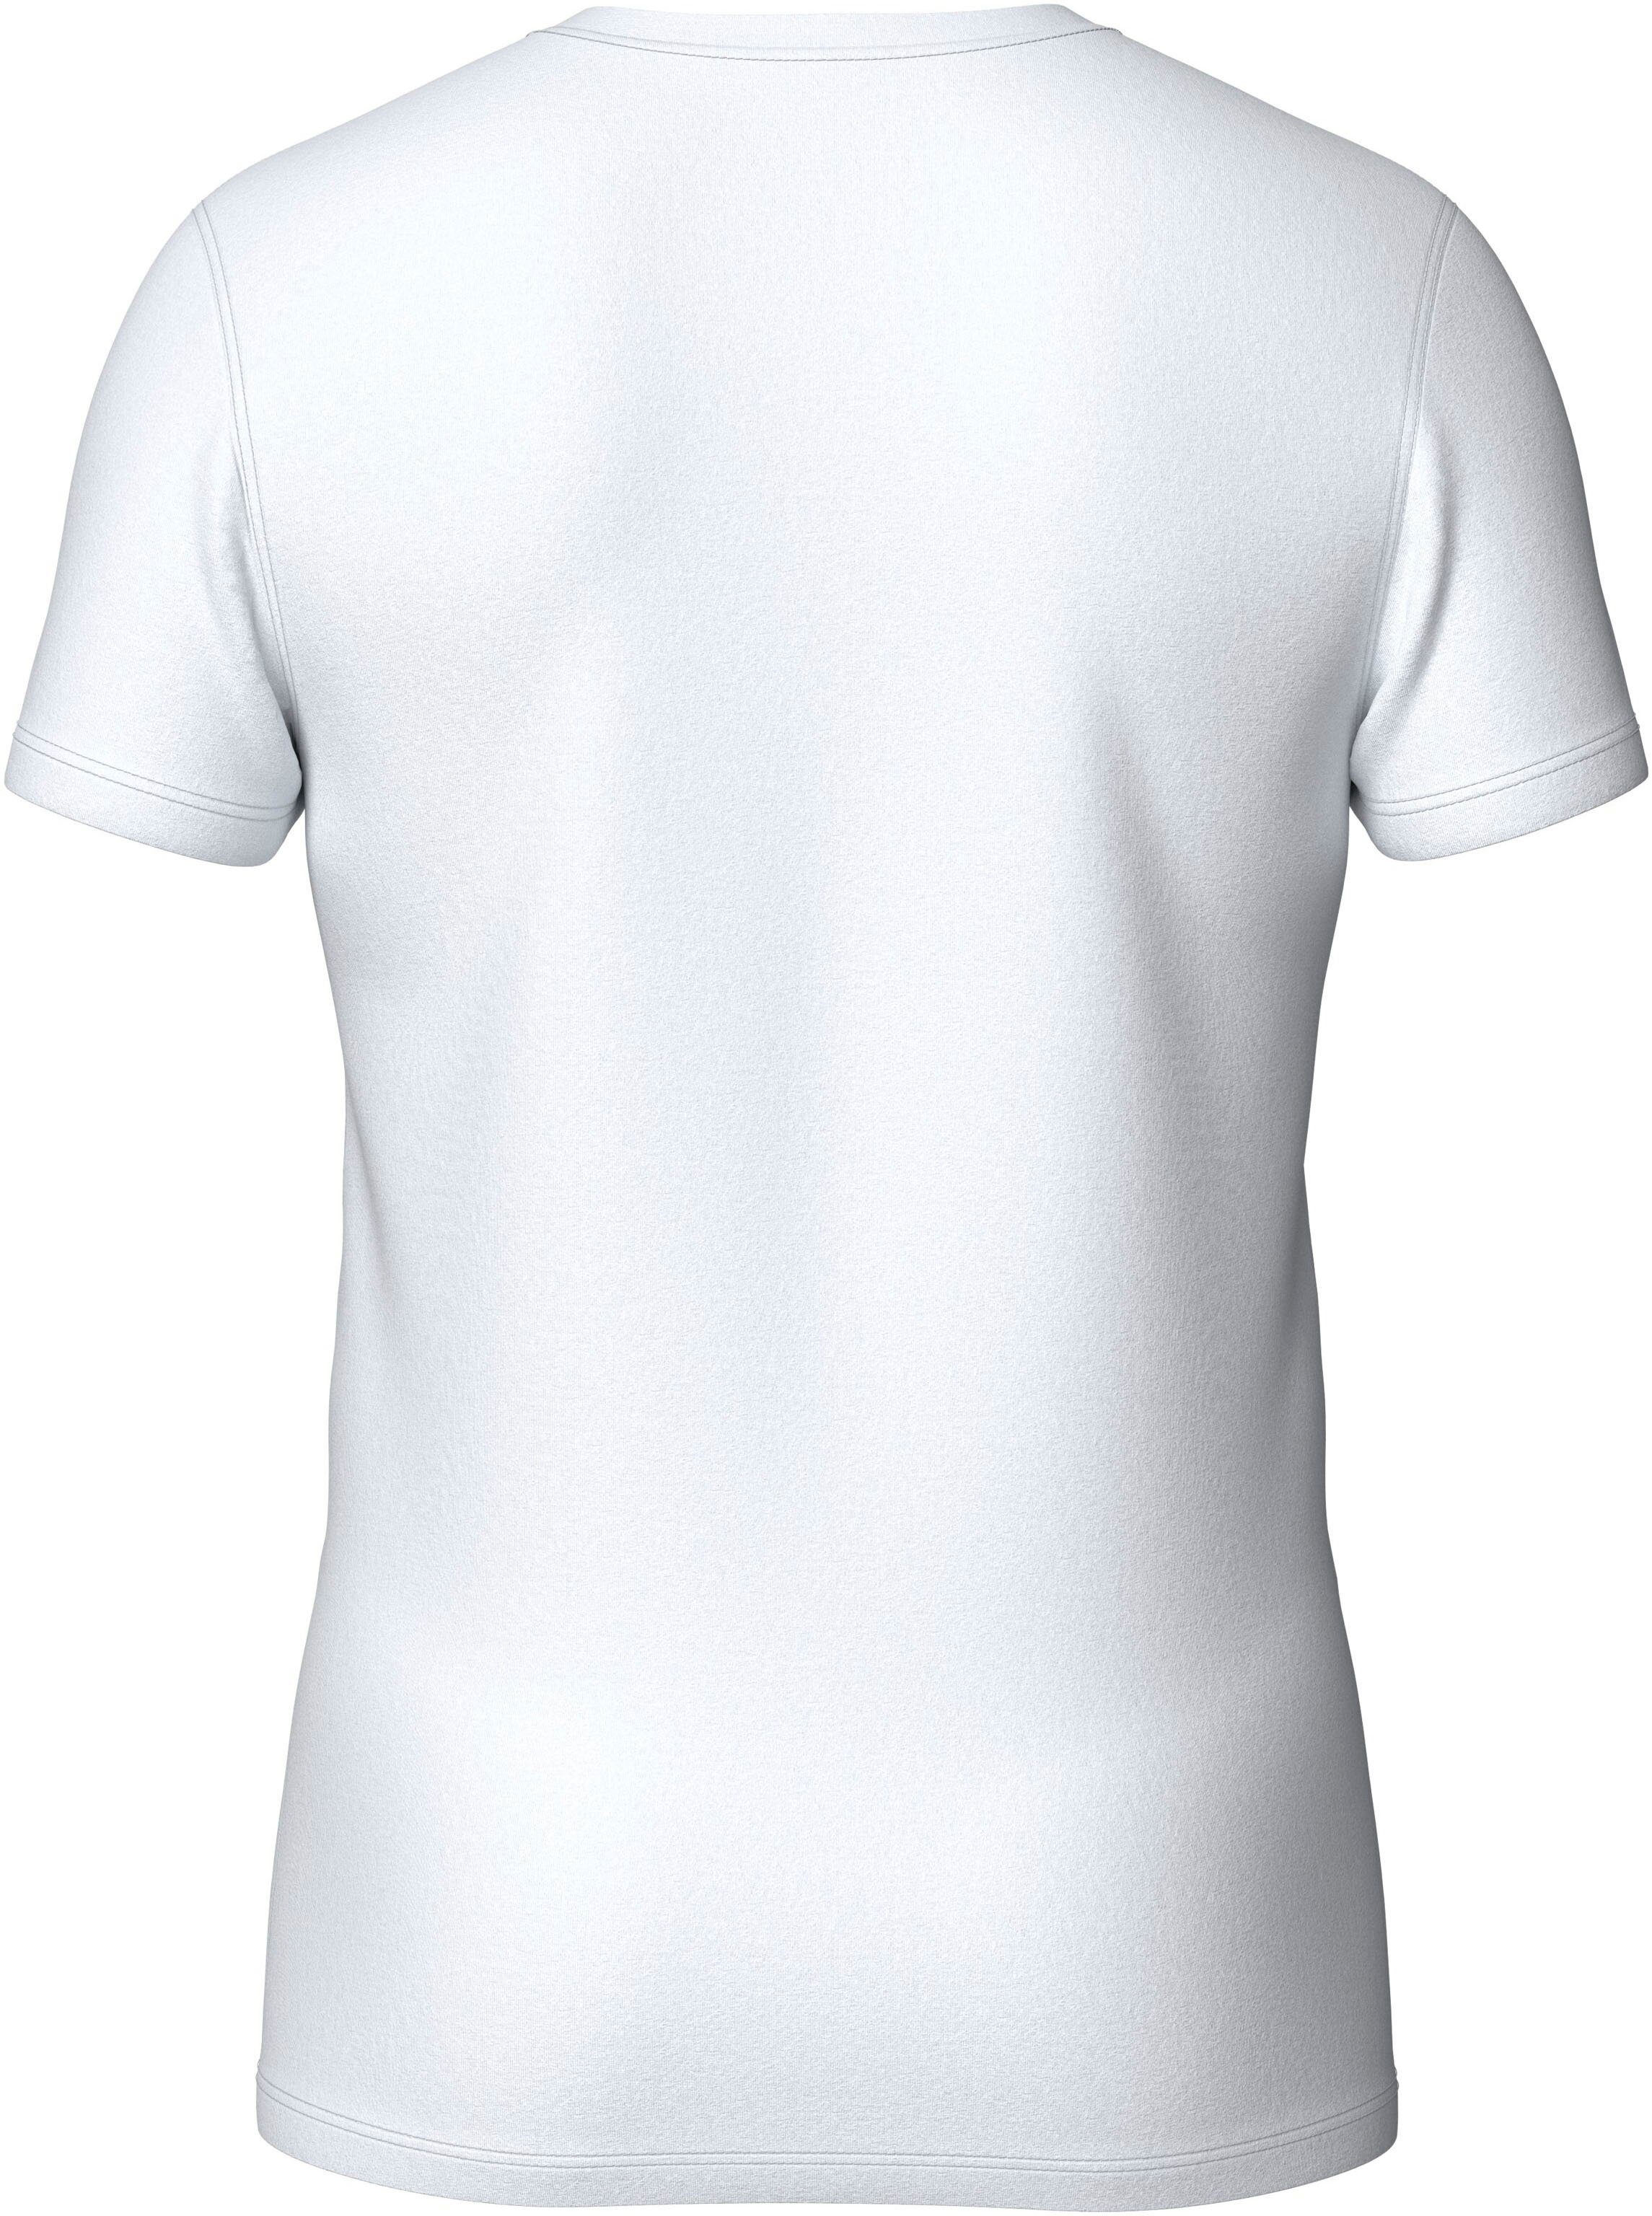 Chiemsee White Bright T-Shirt